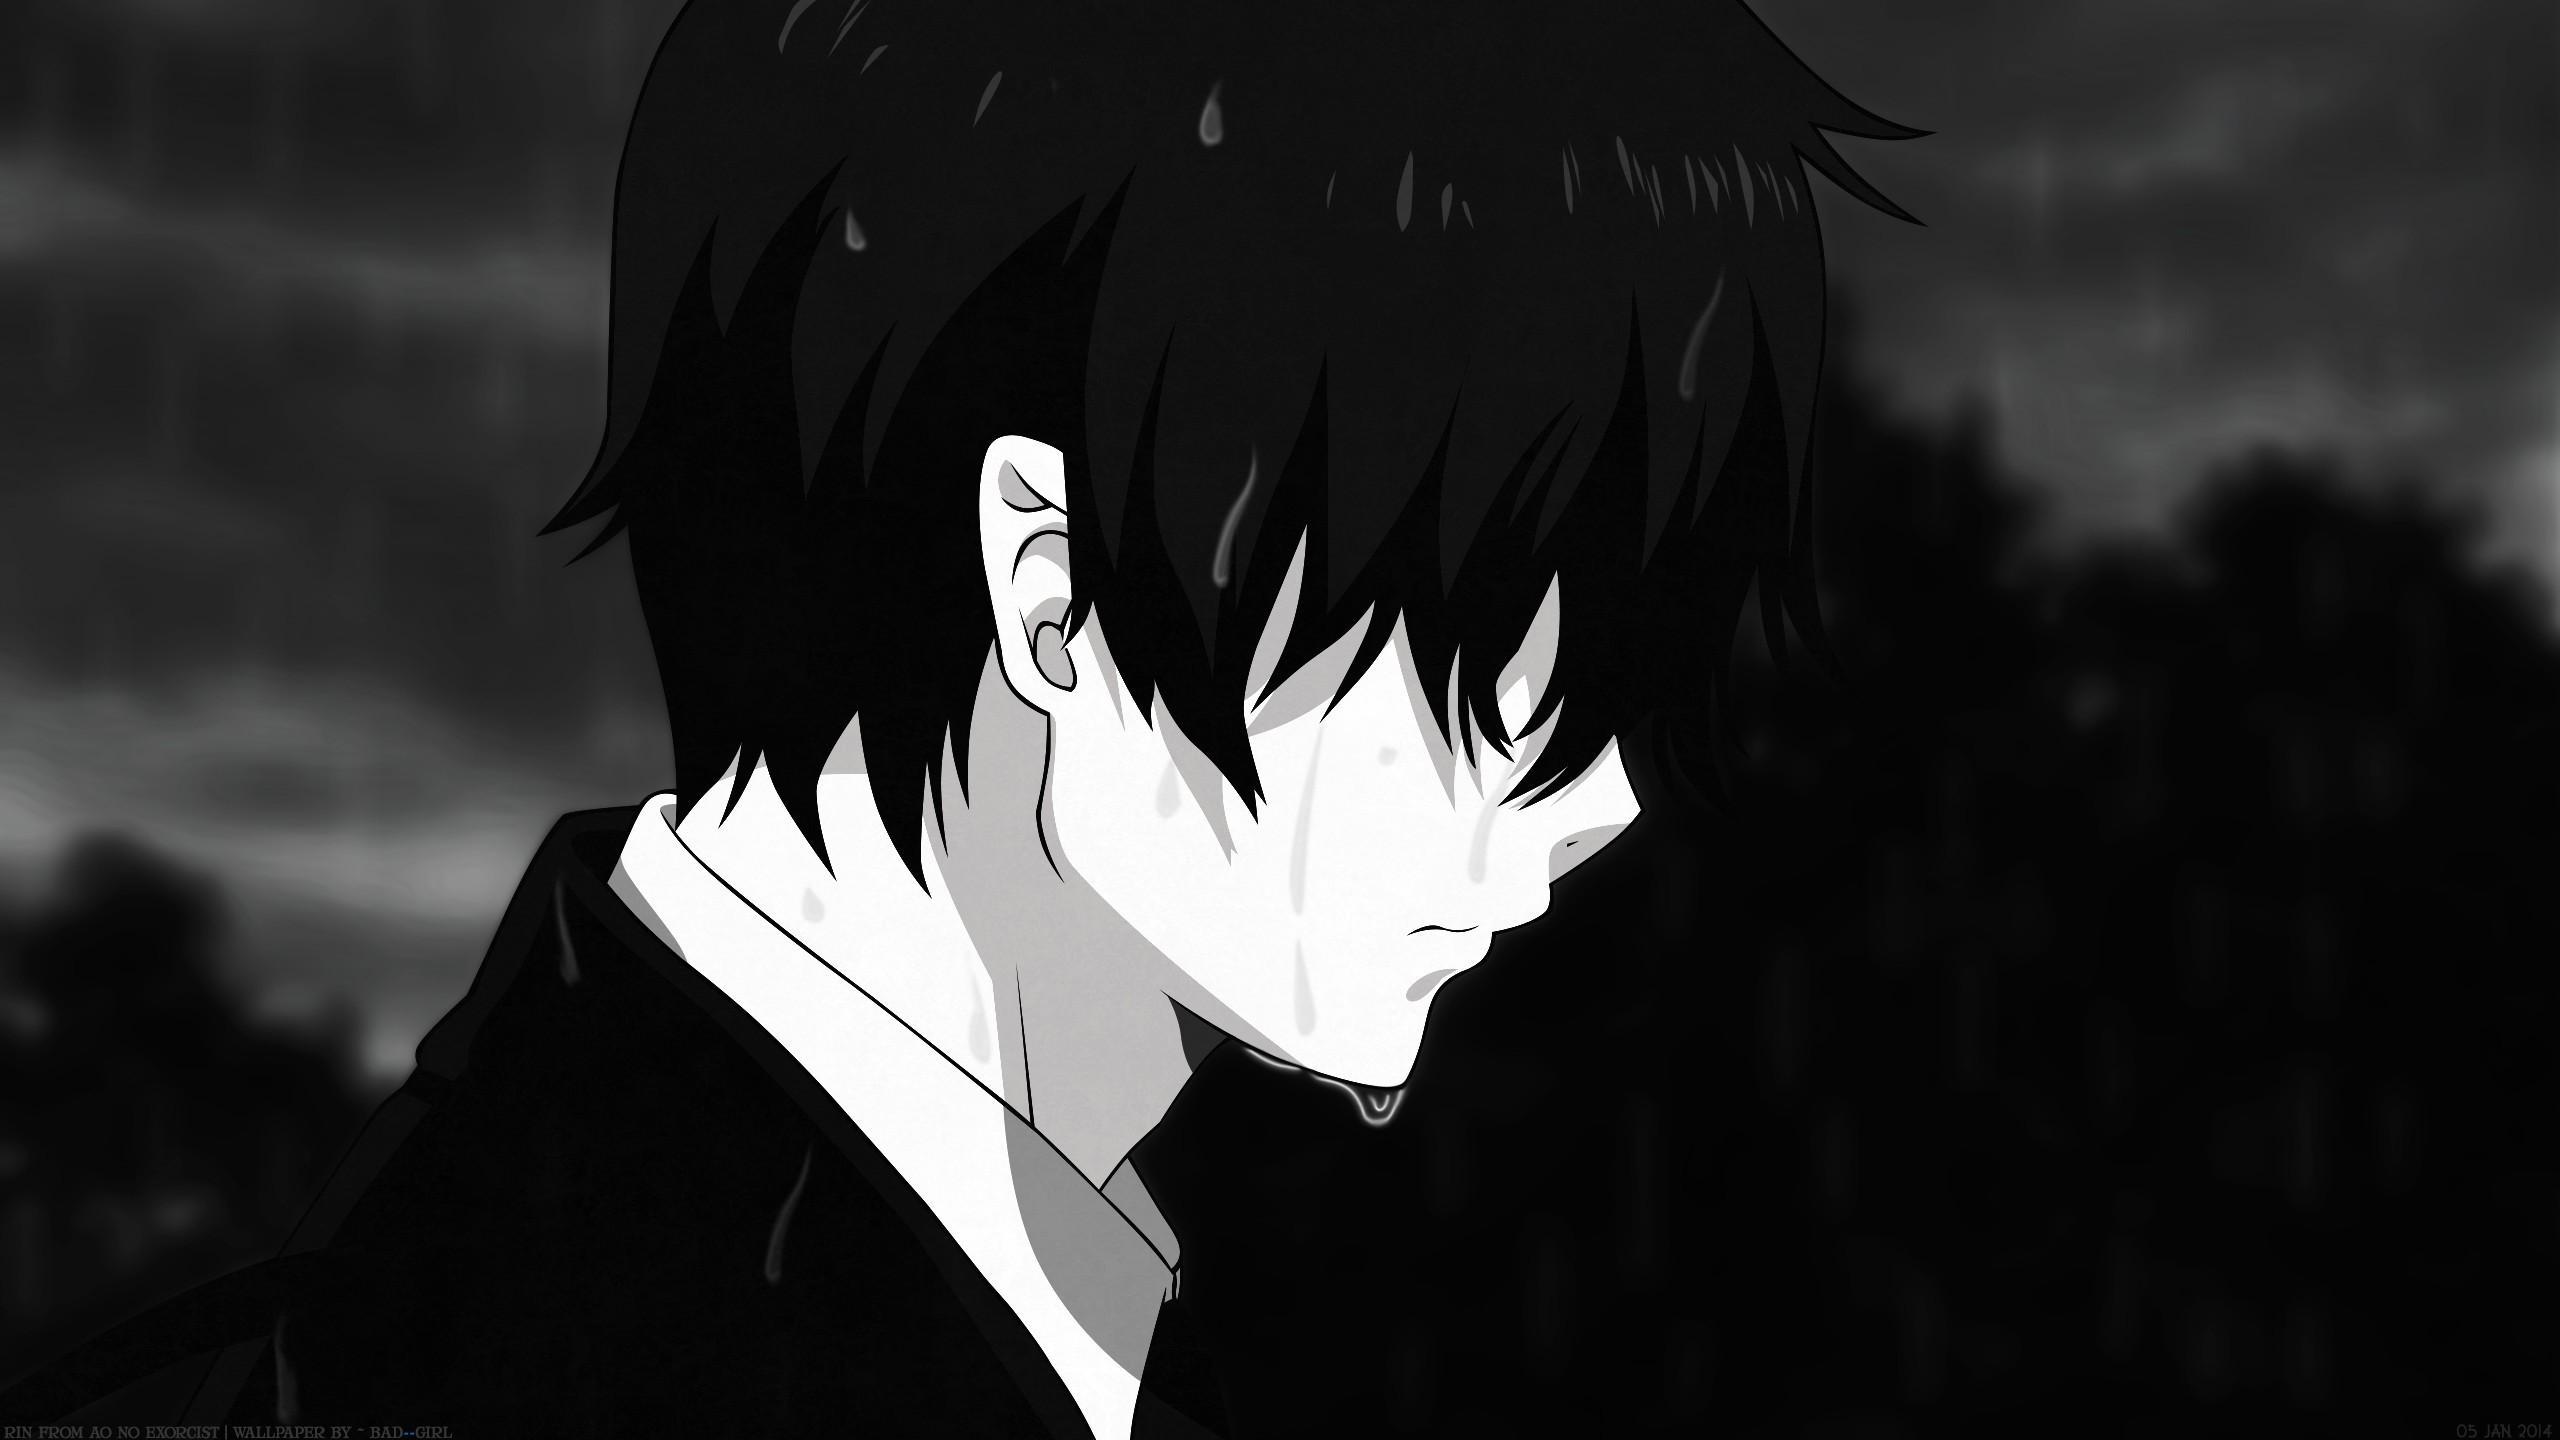 Sad Anime 4k Wallpapers - Top Free Sad Anime 4k Backgrounds ...